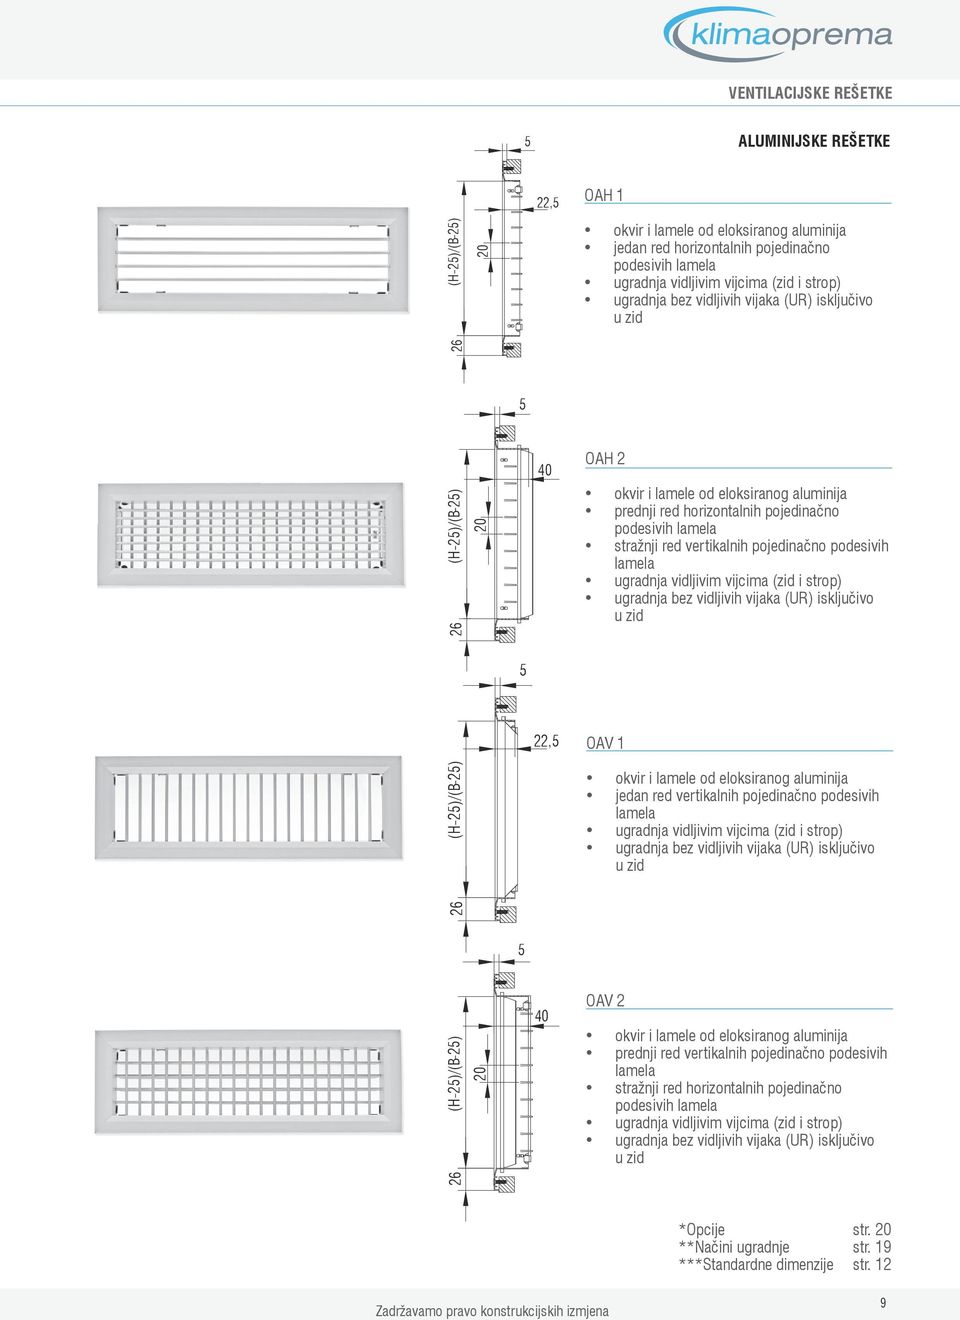 vijcima (zid i strop) ugradnja bez vidljivih vijaka (UR) isključivo u zid, OAV 1 ()/() okvir i lamele od eloksiranog aluminija jedan red vertikalnih pojedinačno podesivih lamela ugradnja vidljivim